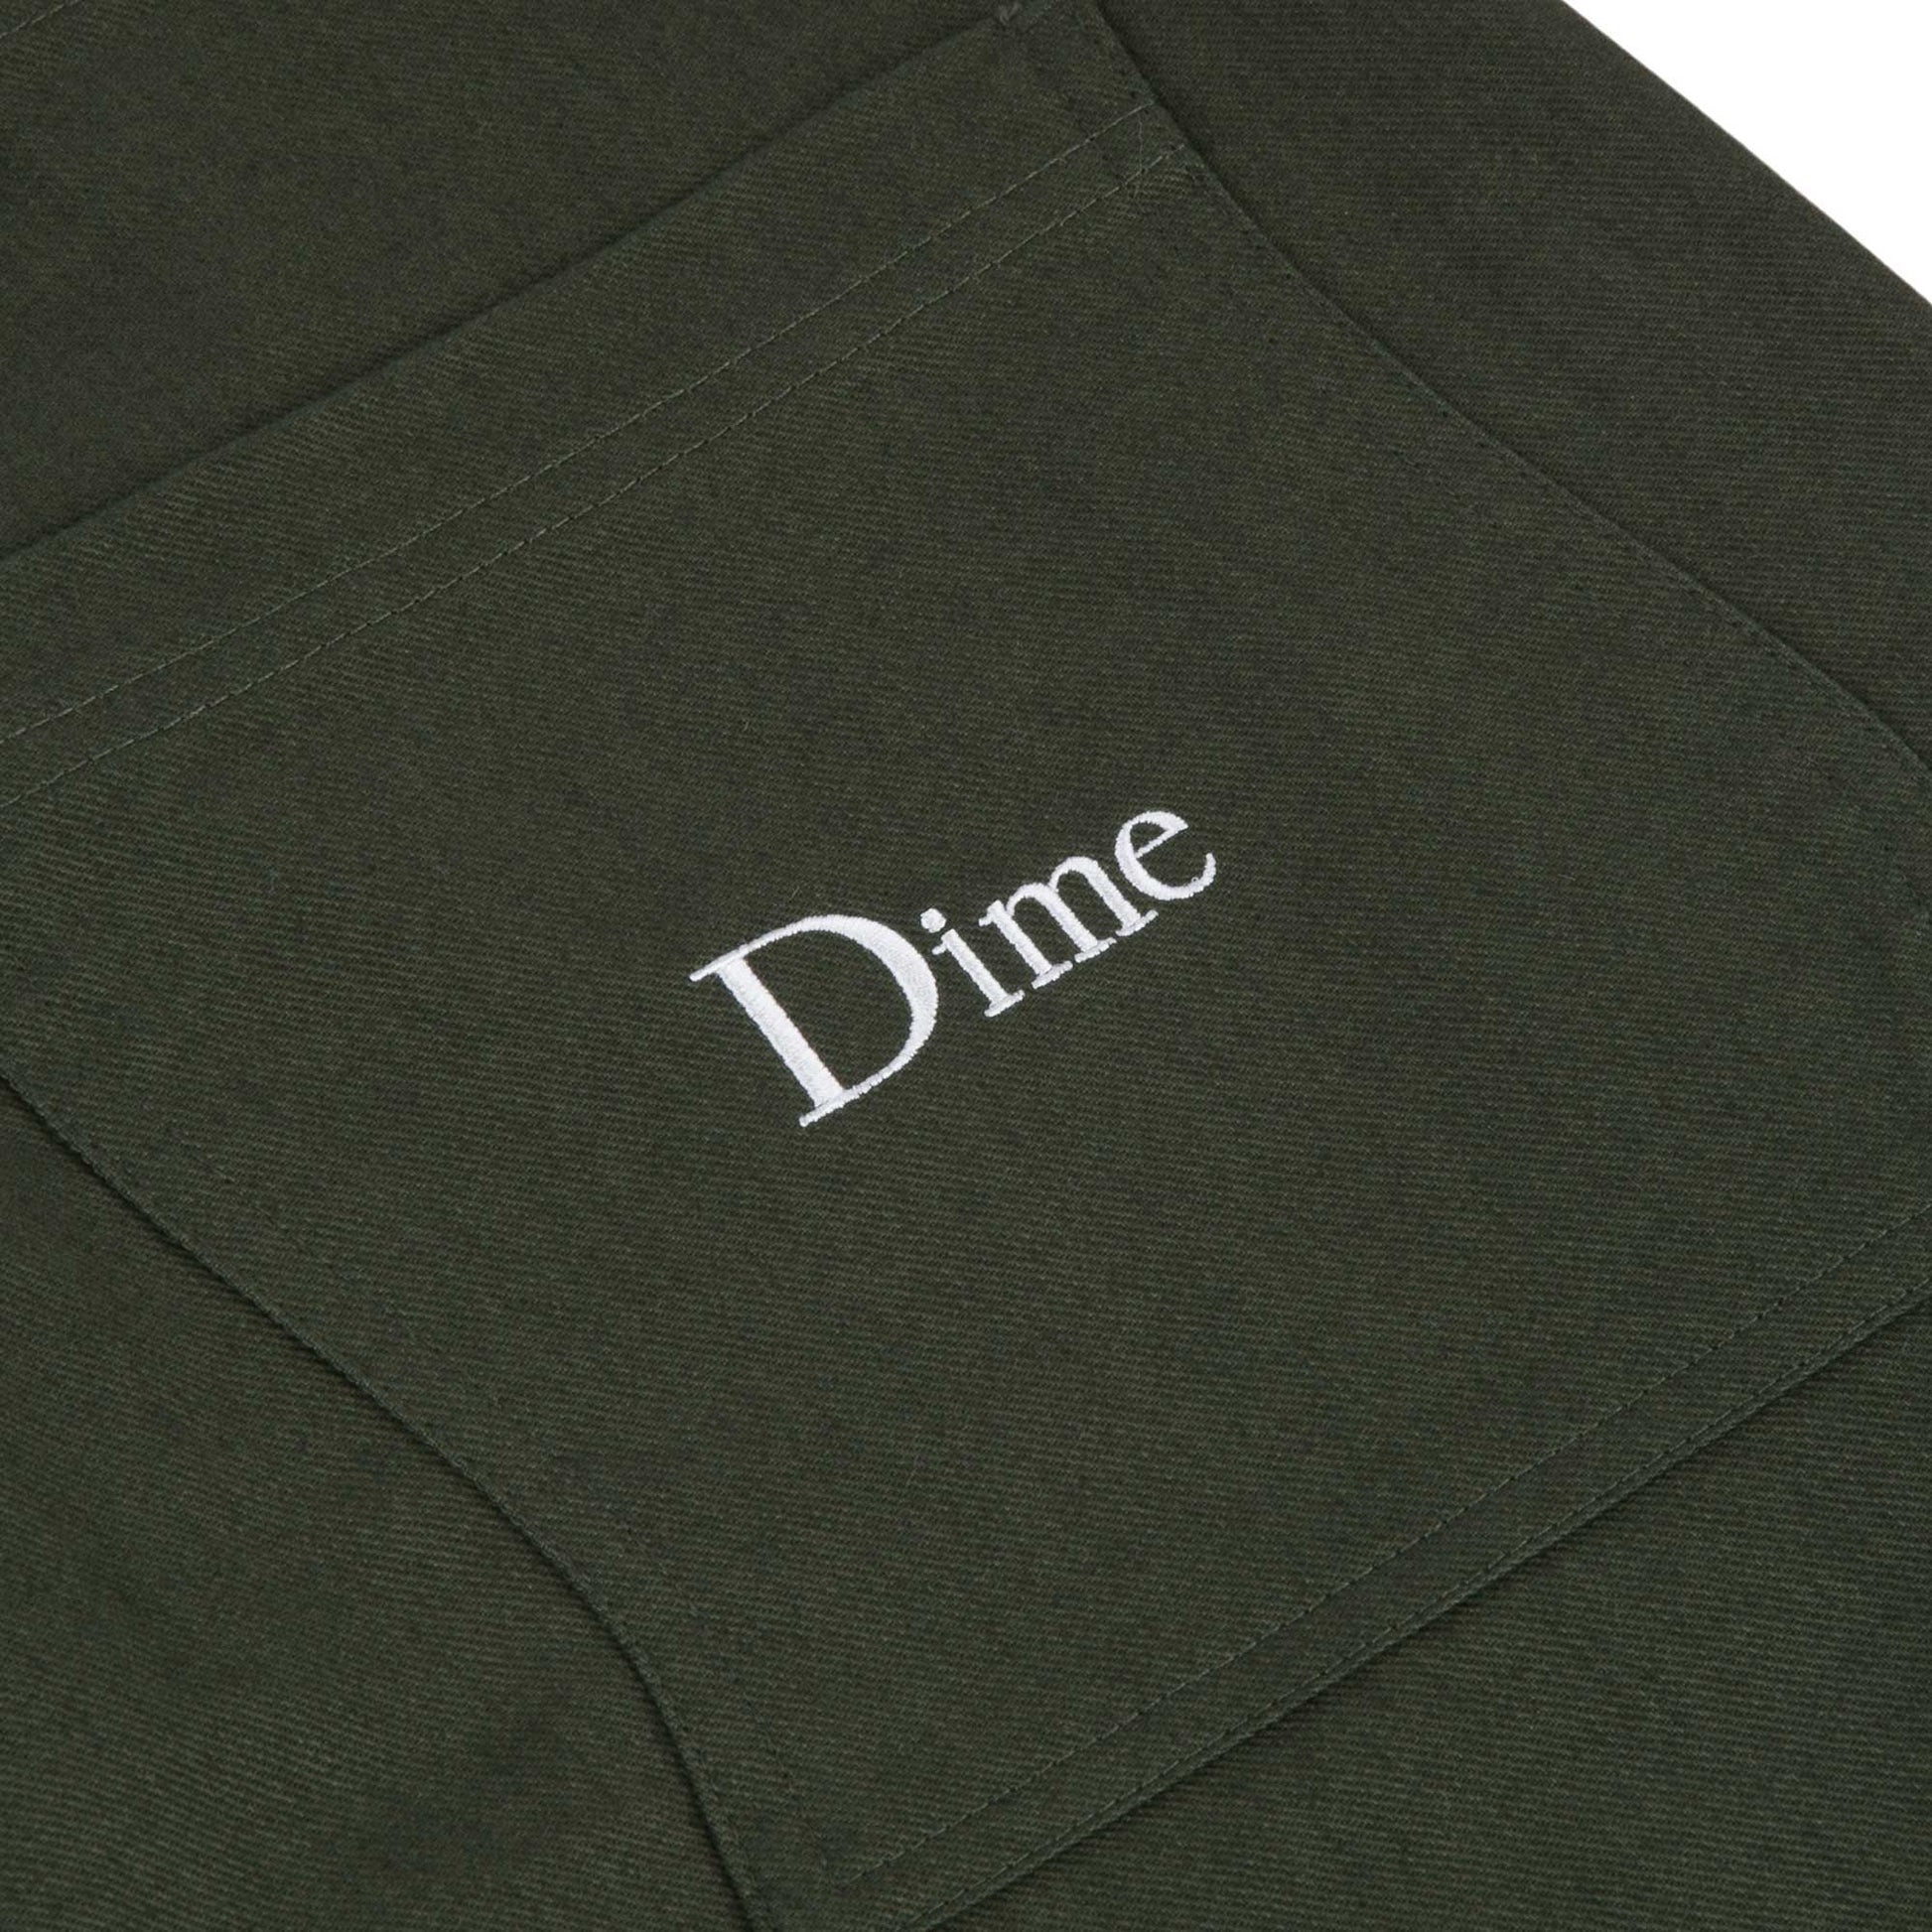 Dime Classic Chino Pants, dark olive - Tiki Room Skateboards - 5